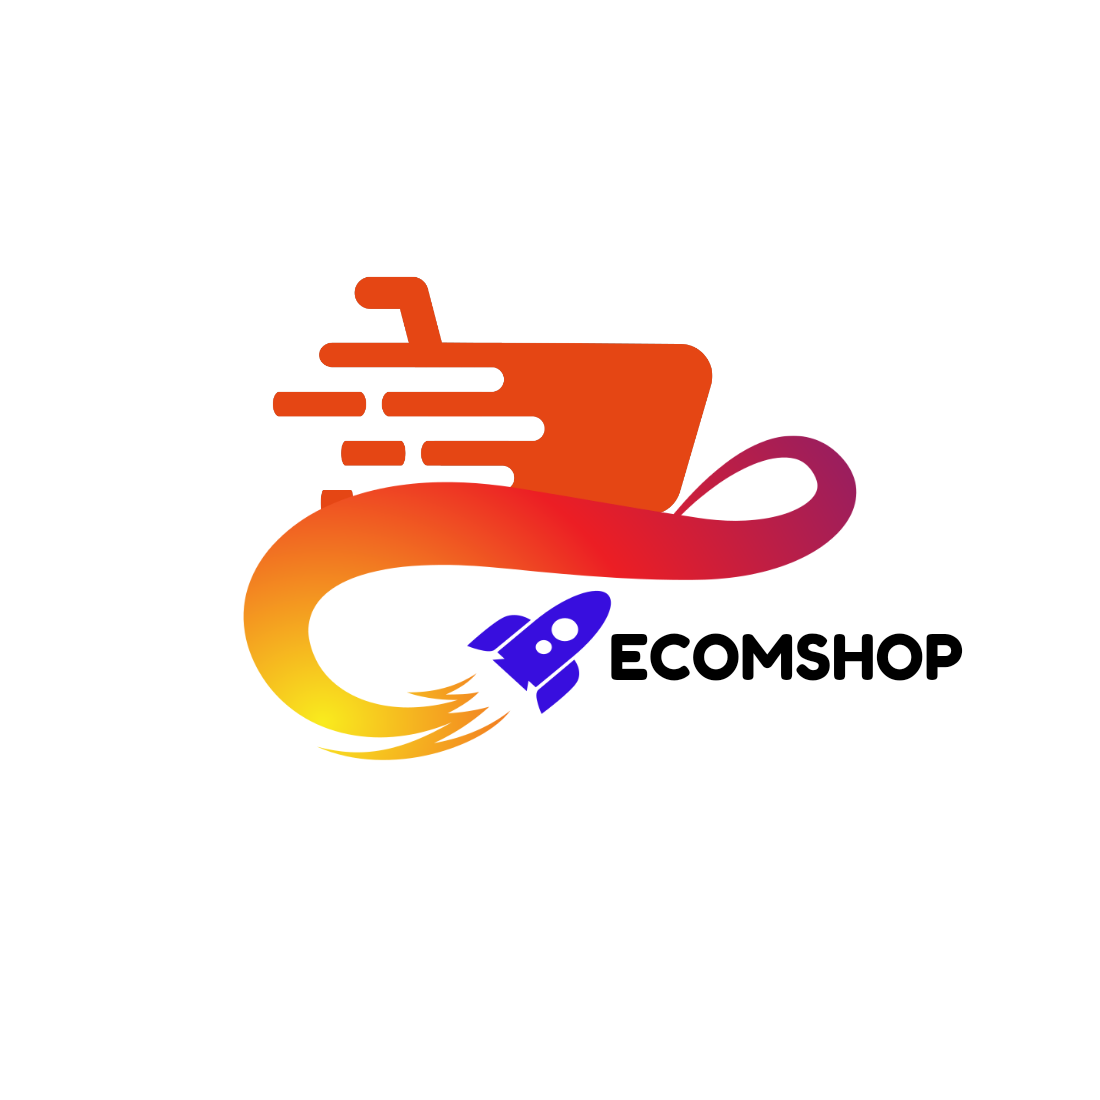 Ecommerce Logo cover image.